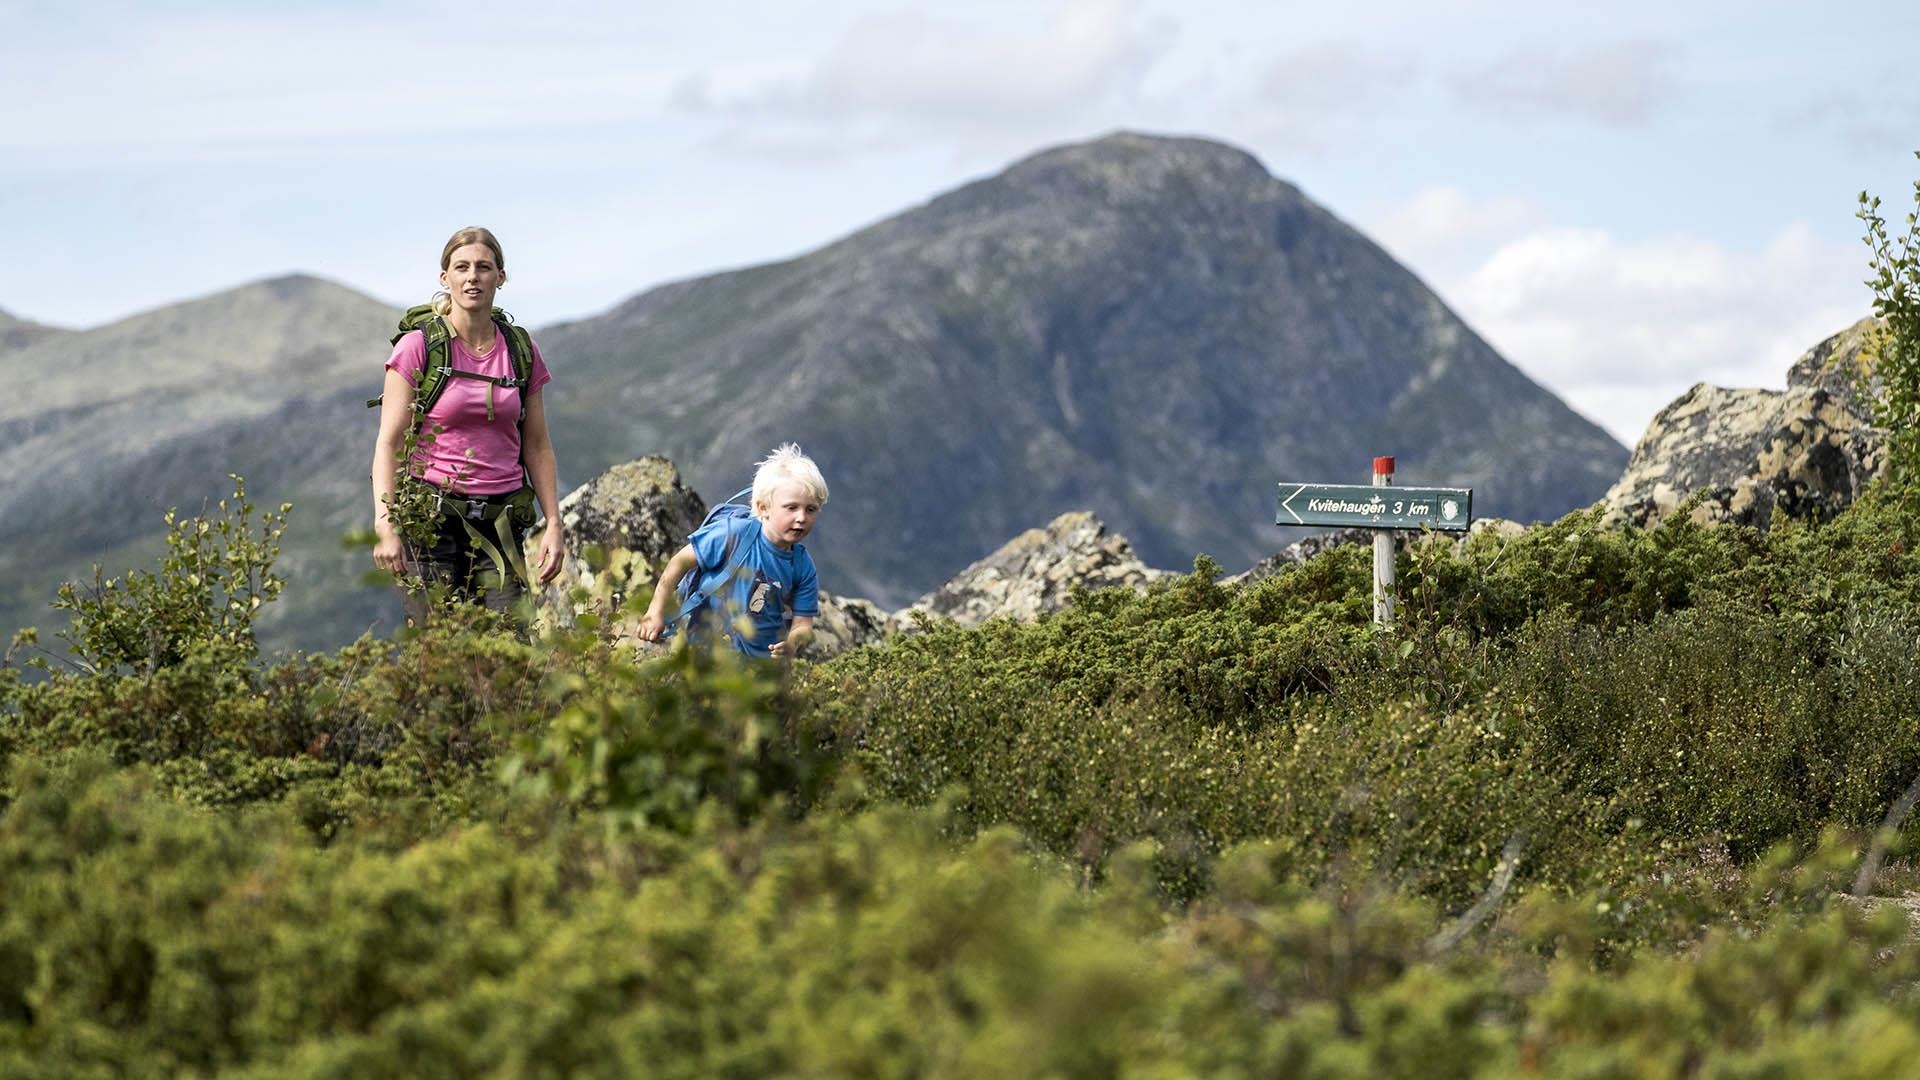 Eine Frau und ein kleiner Junge bei einem Wanderskilt in offener Fjellandschaft mit Buschvegetation und einem Berg im Hintergrund.